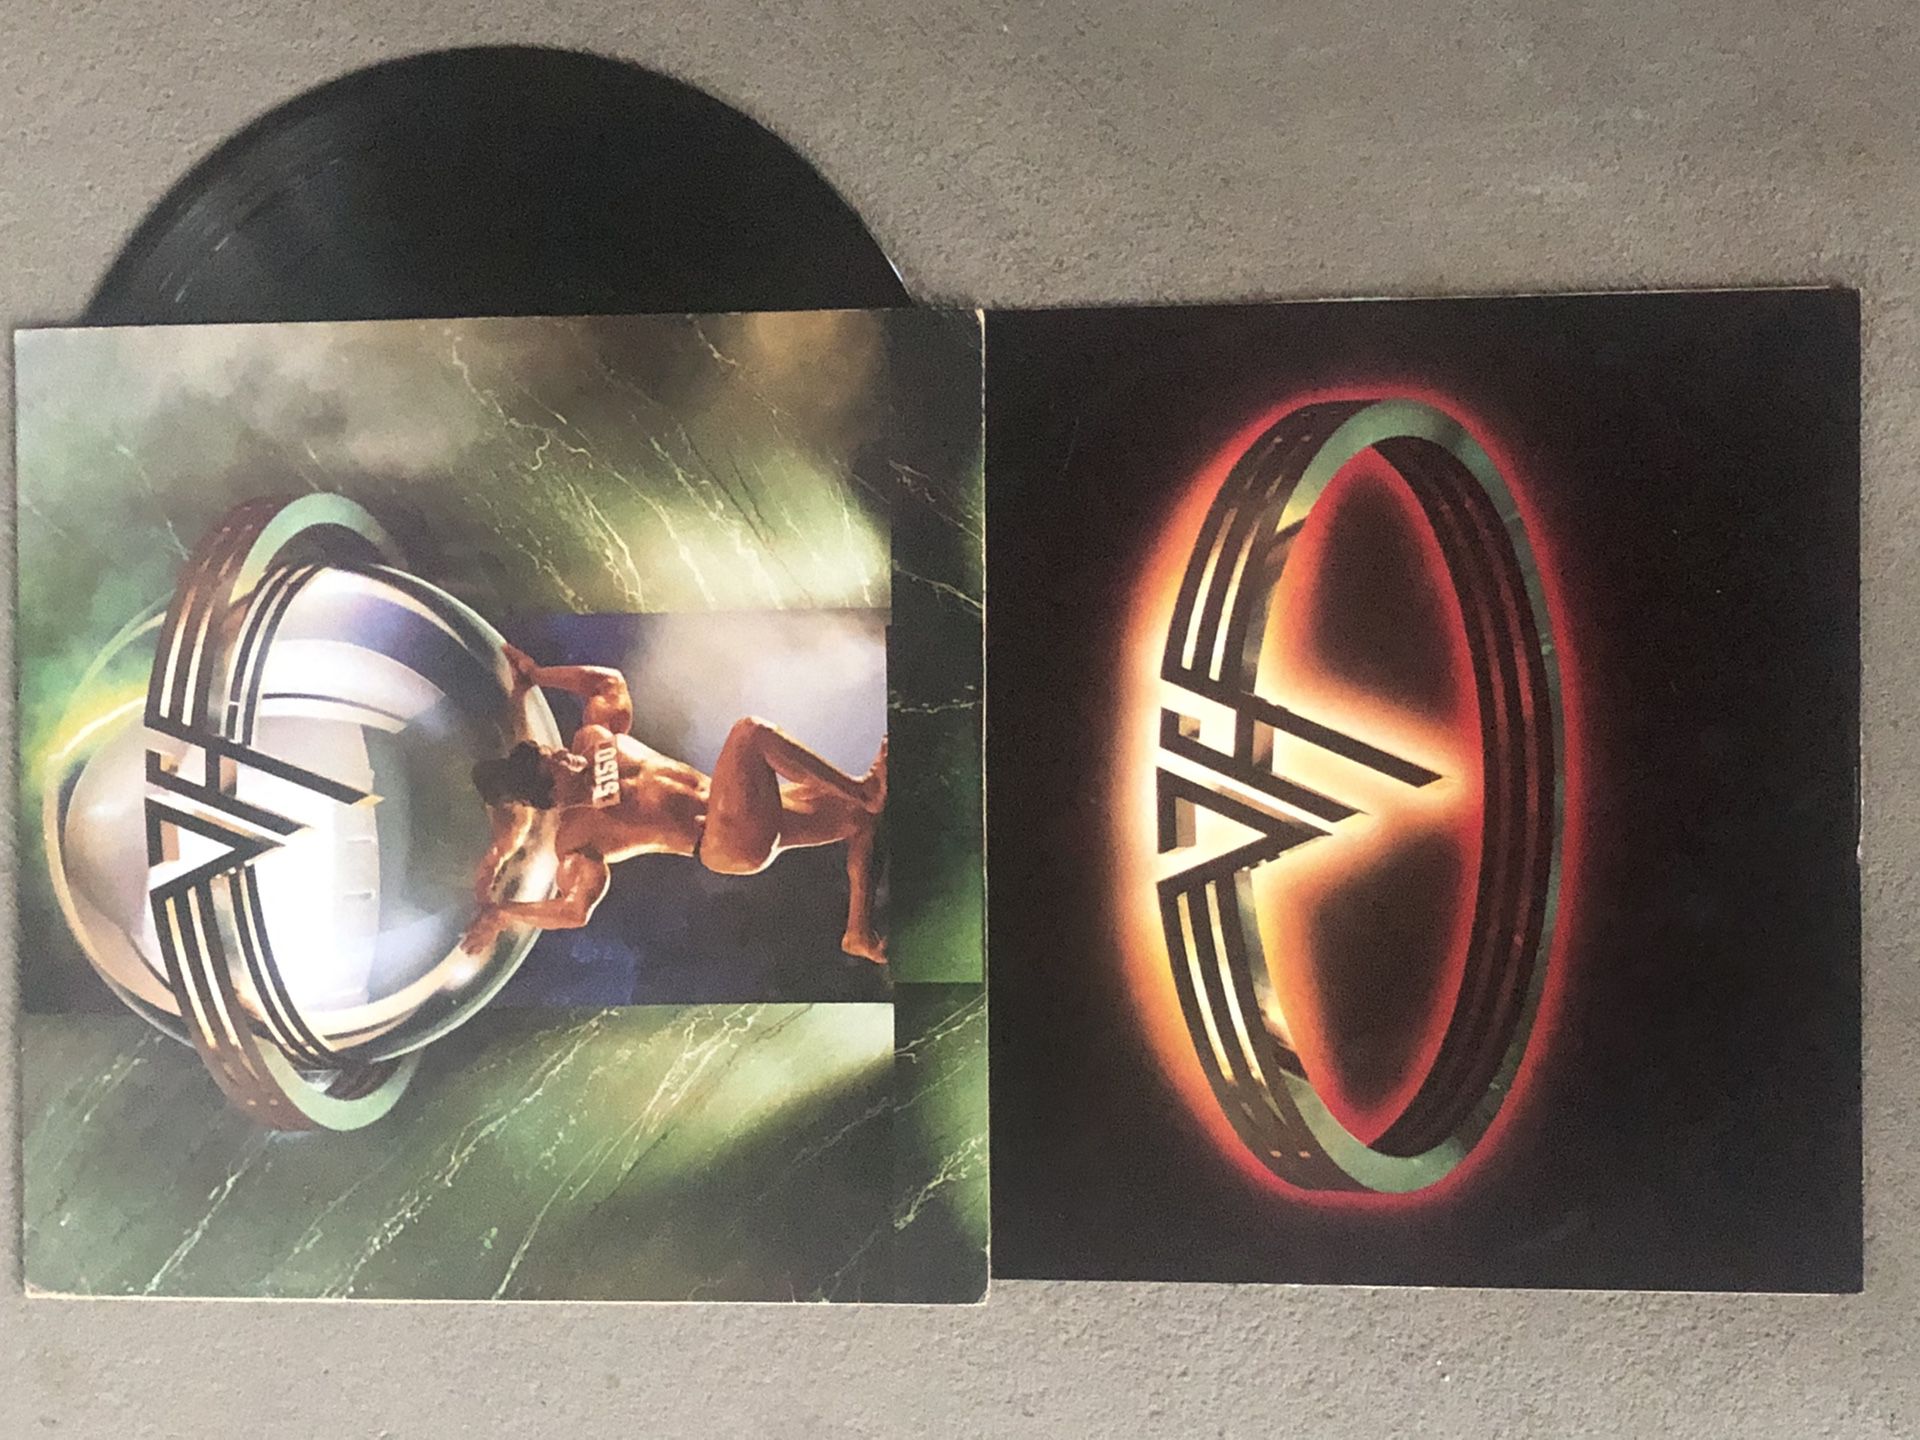 Van Halen “5150” Original Vinyl Album